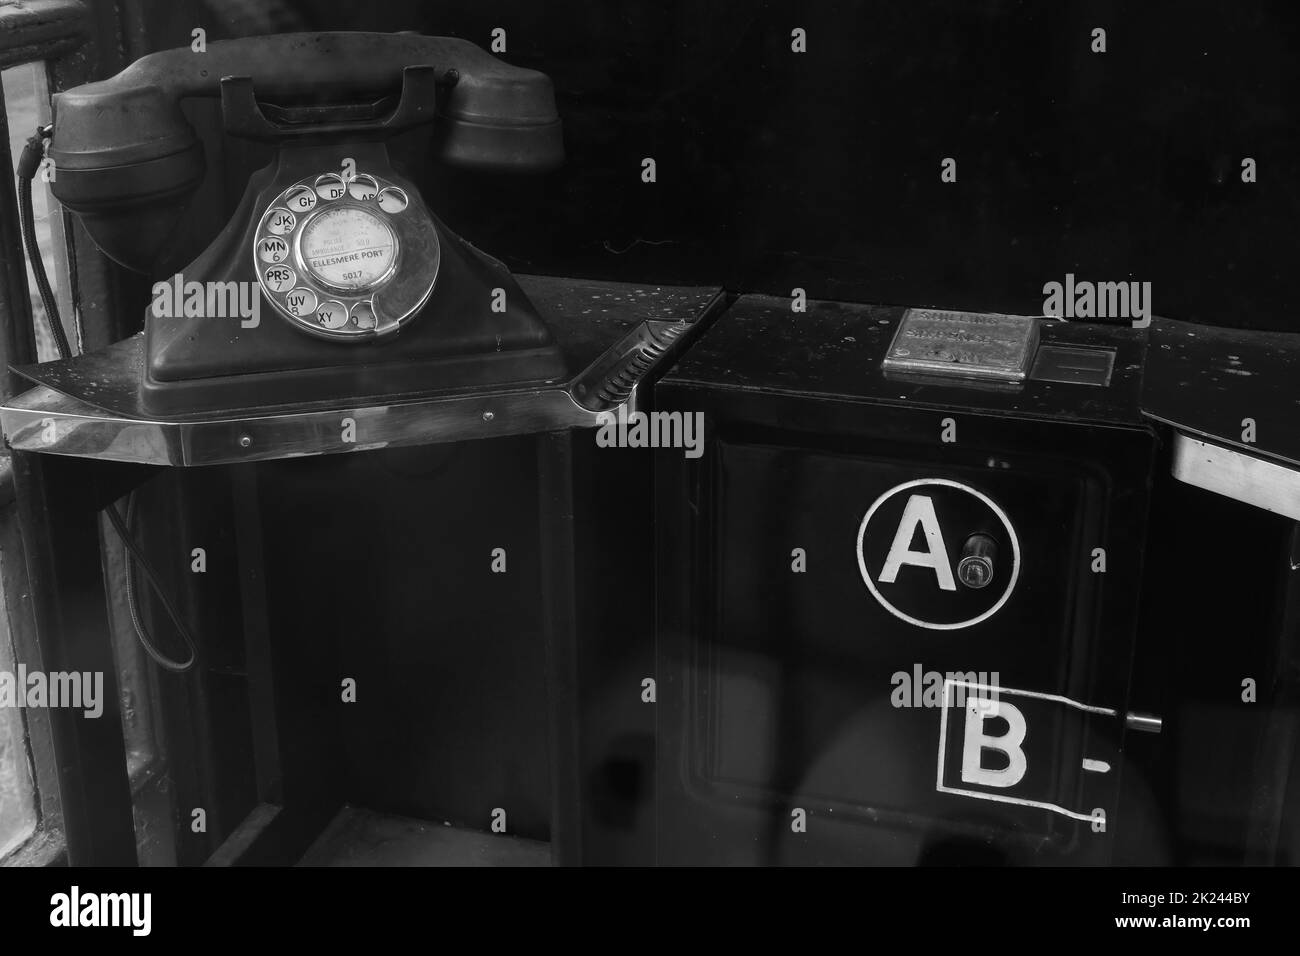 Alte britische 1940er-Telefonzelle mit A- und B-Tasten. Setze Münzen ein, drücke Knopf A, um gehört zu werden, oder Knopf B, um das Geld zurückzubekommen Stockfoto